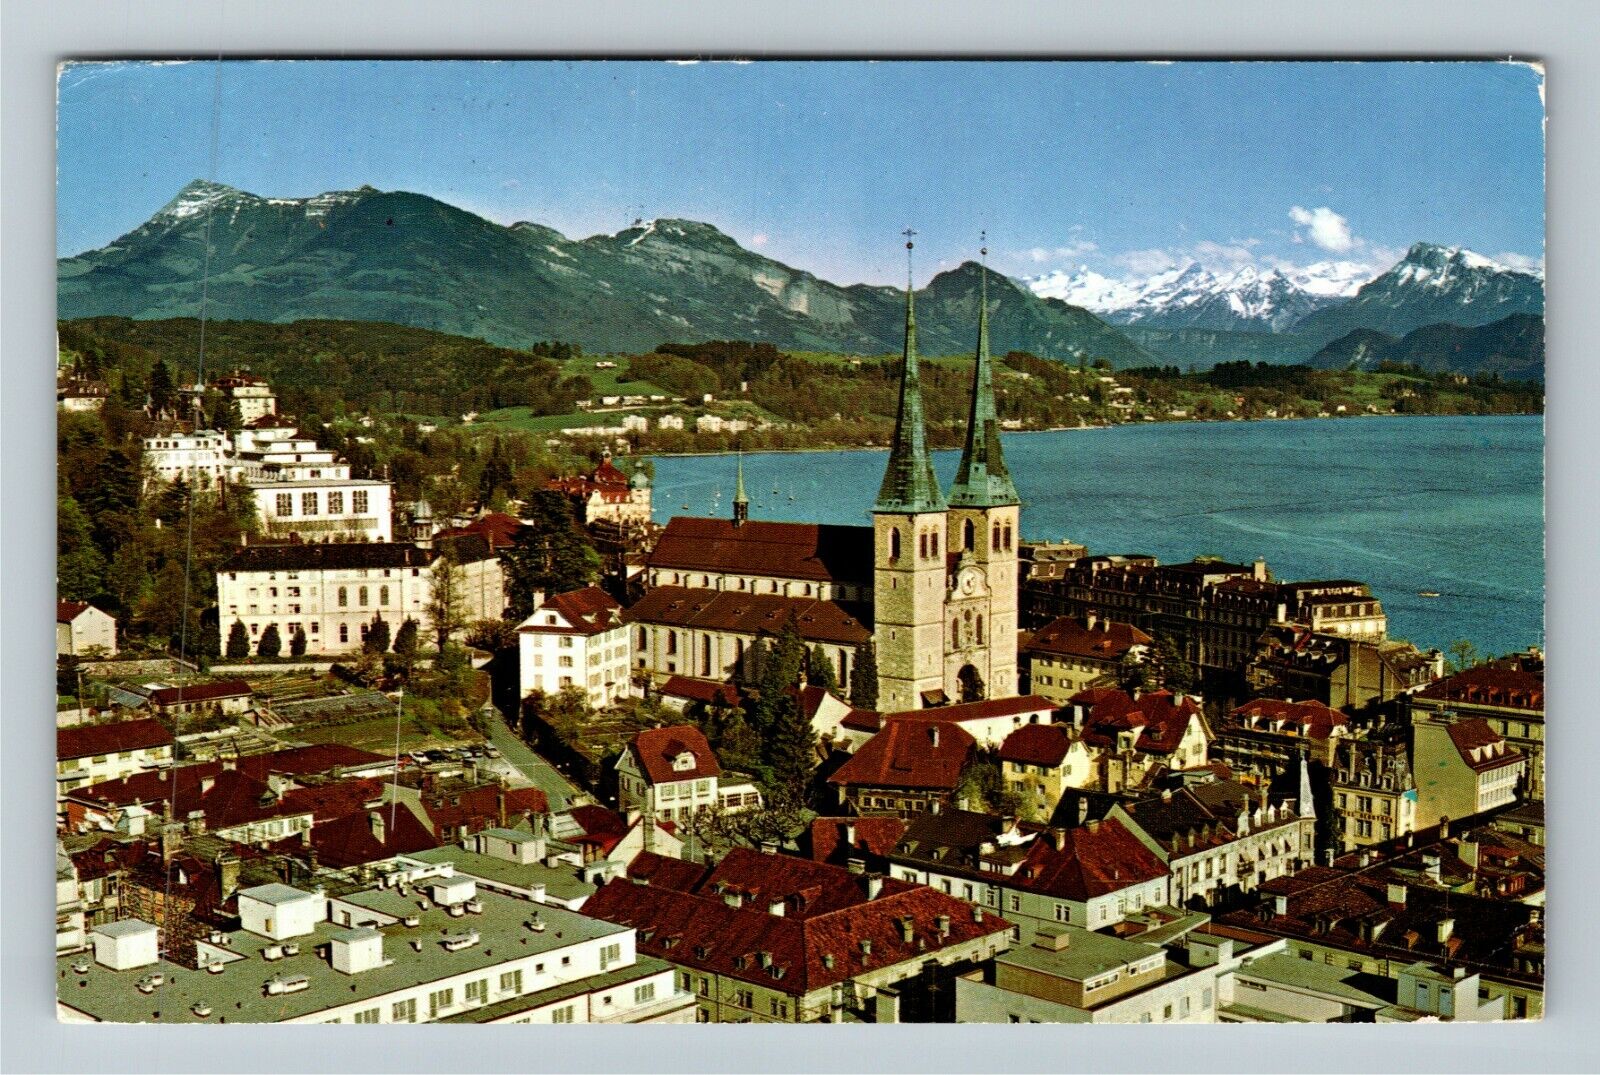 CH-Switzerland Luzern mit Rigi Alpen Mountains Scenery c1970 Vintage Postcard